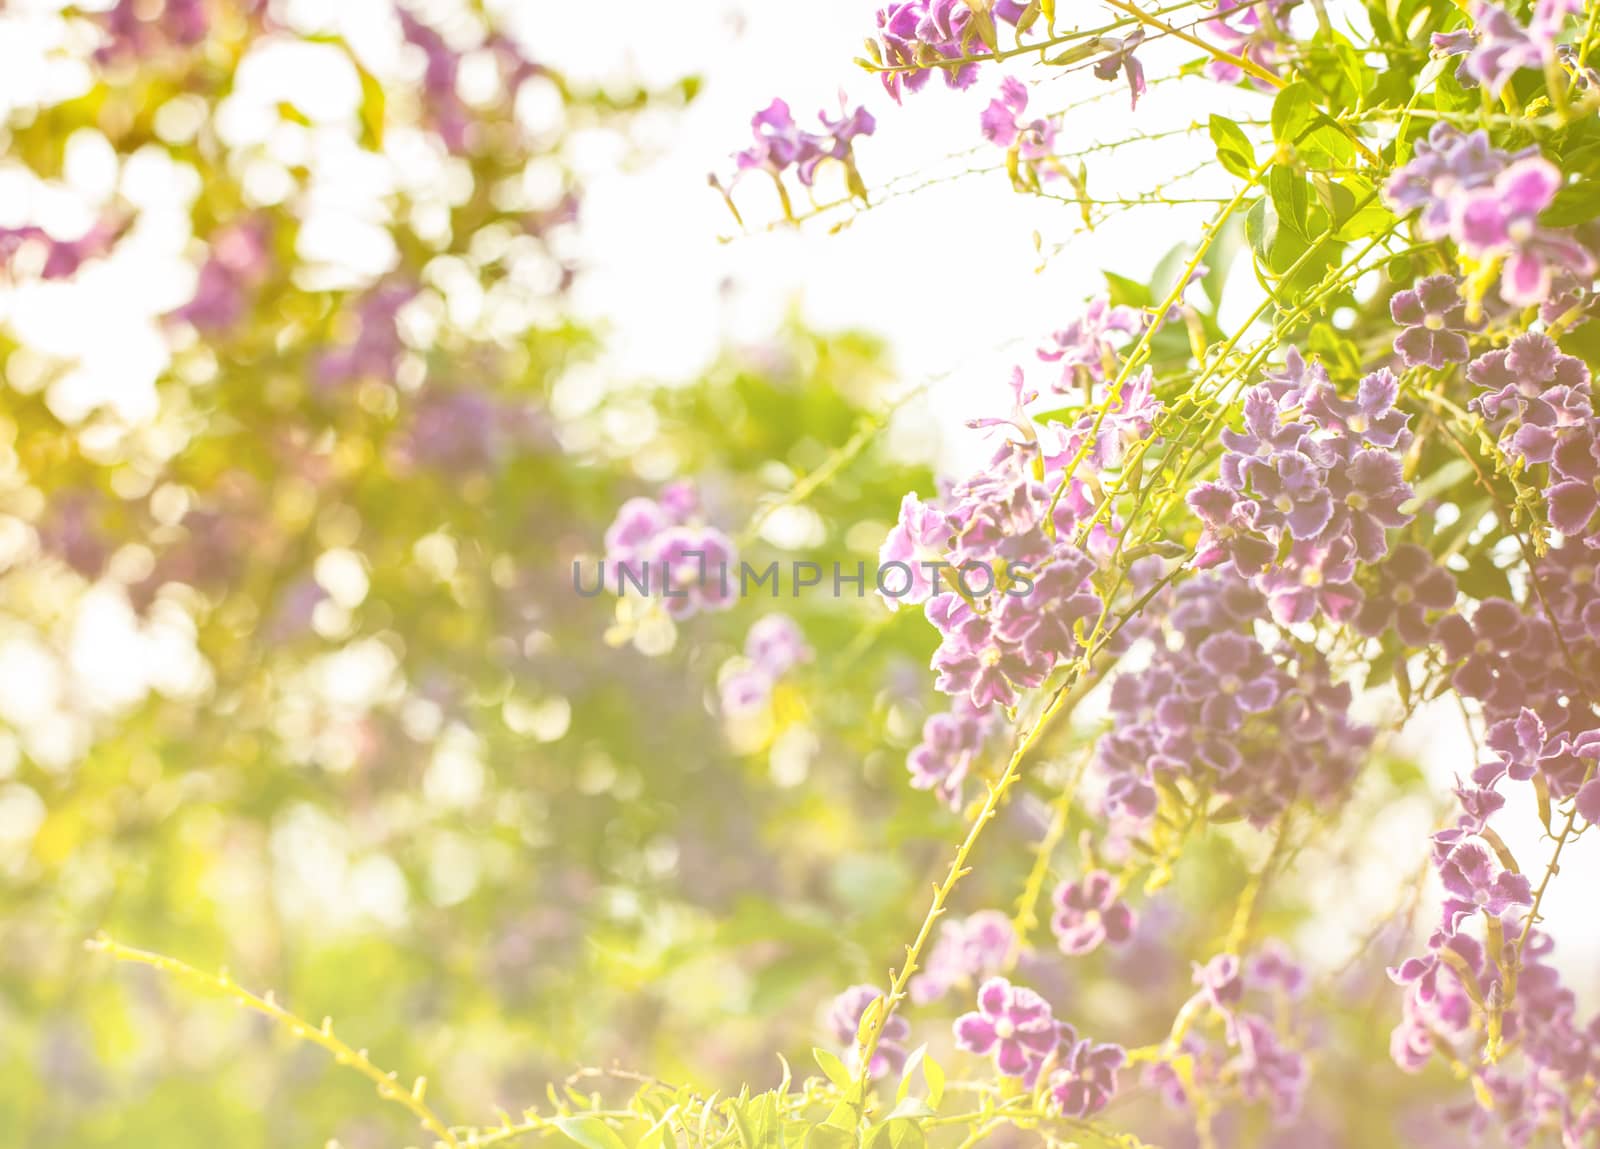 Beautiful flower nature colorful by jimbophoto